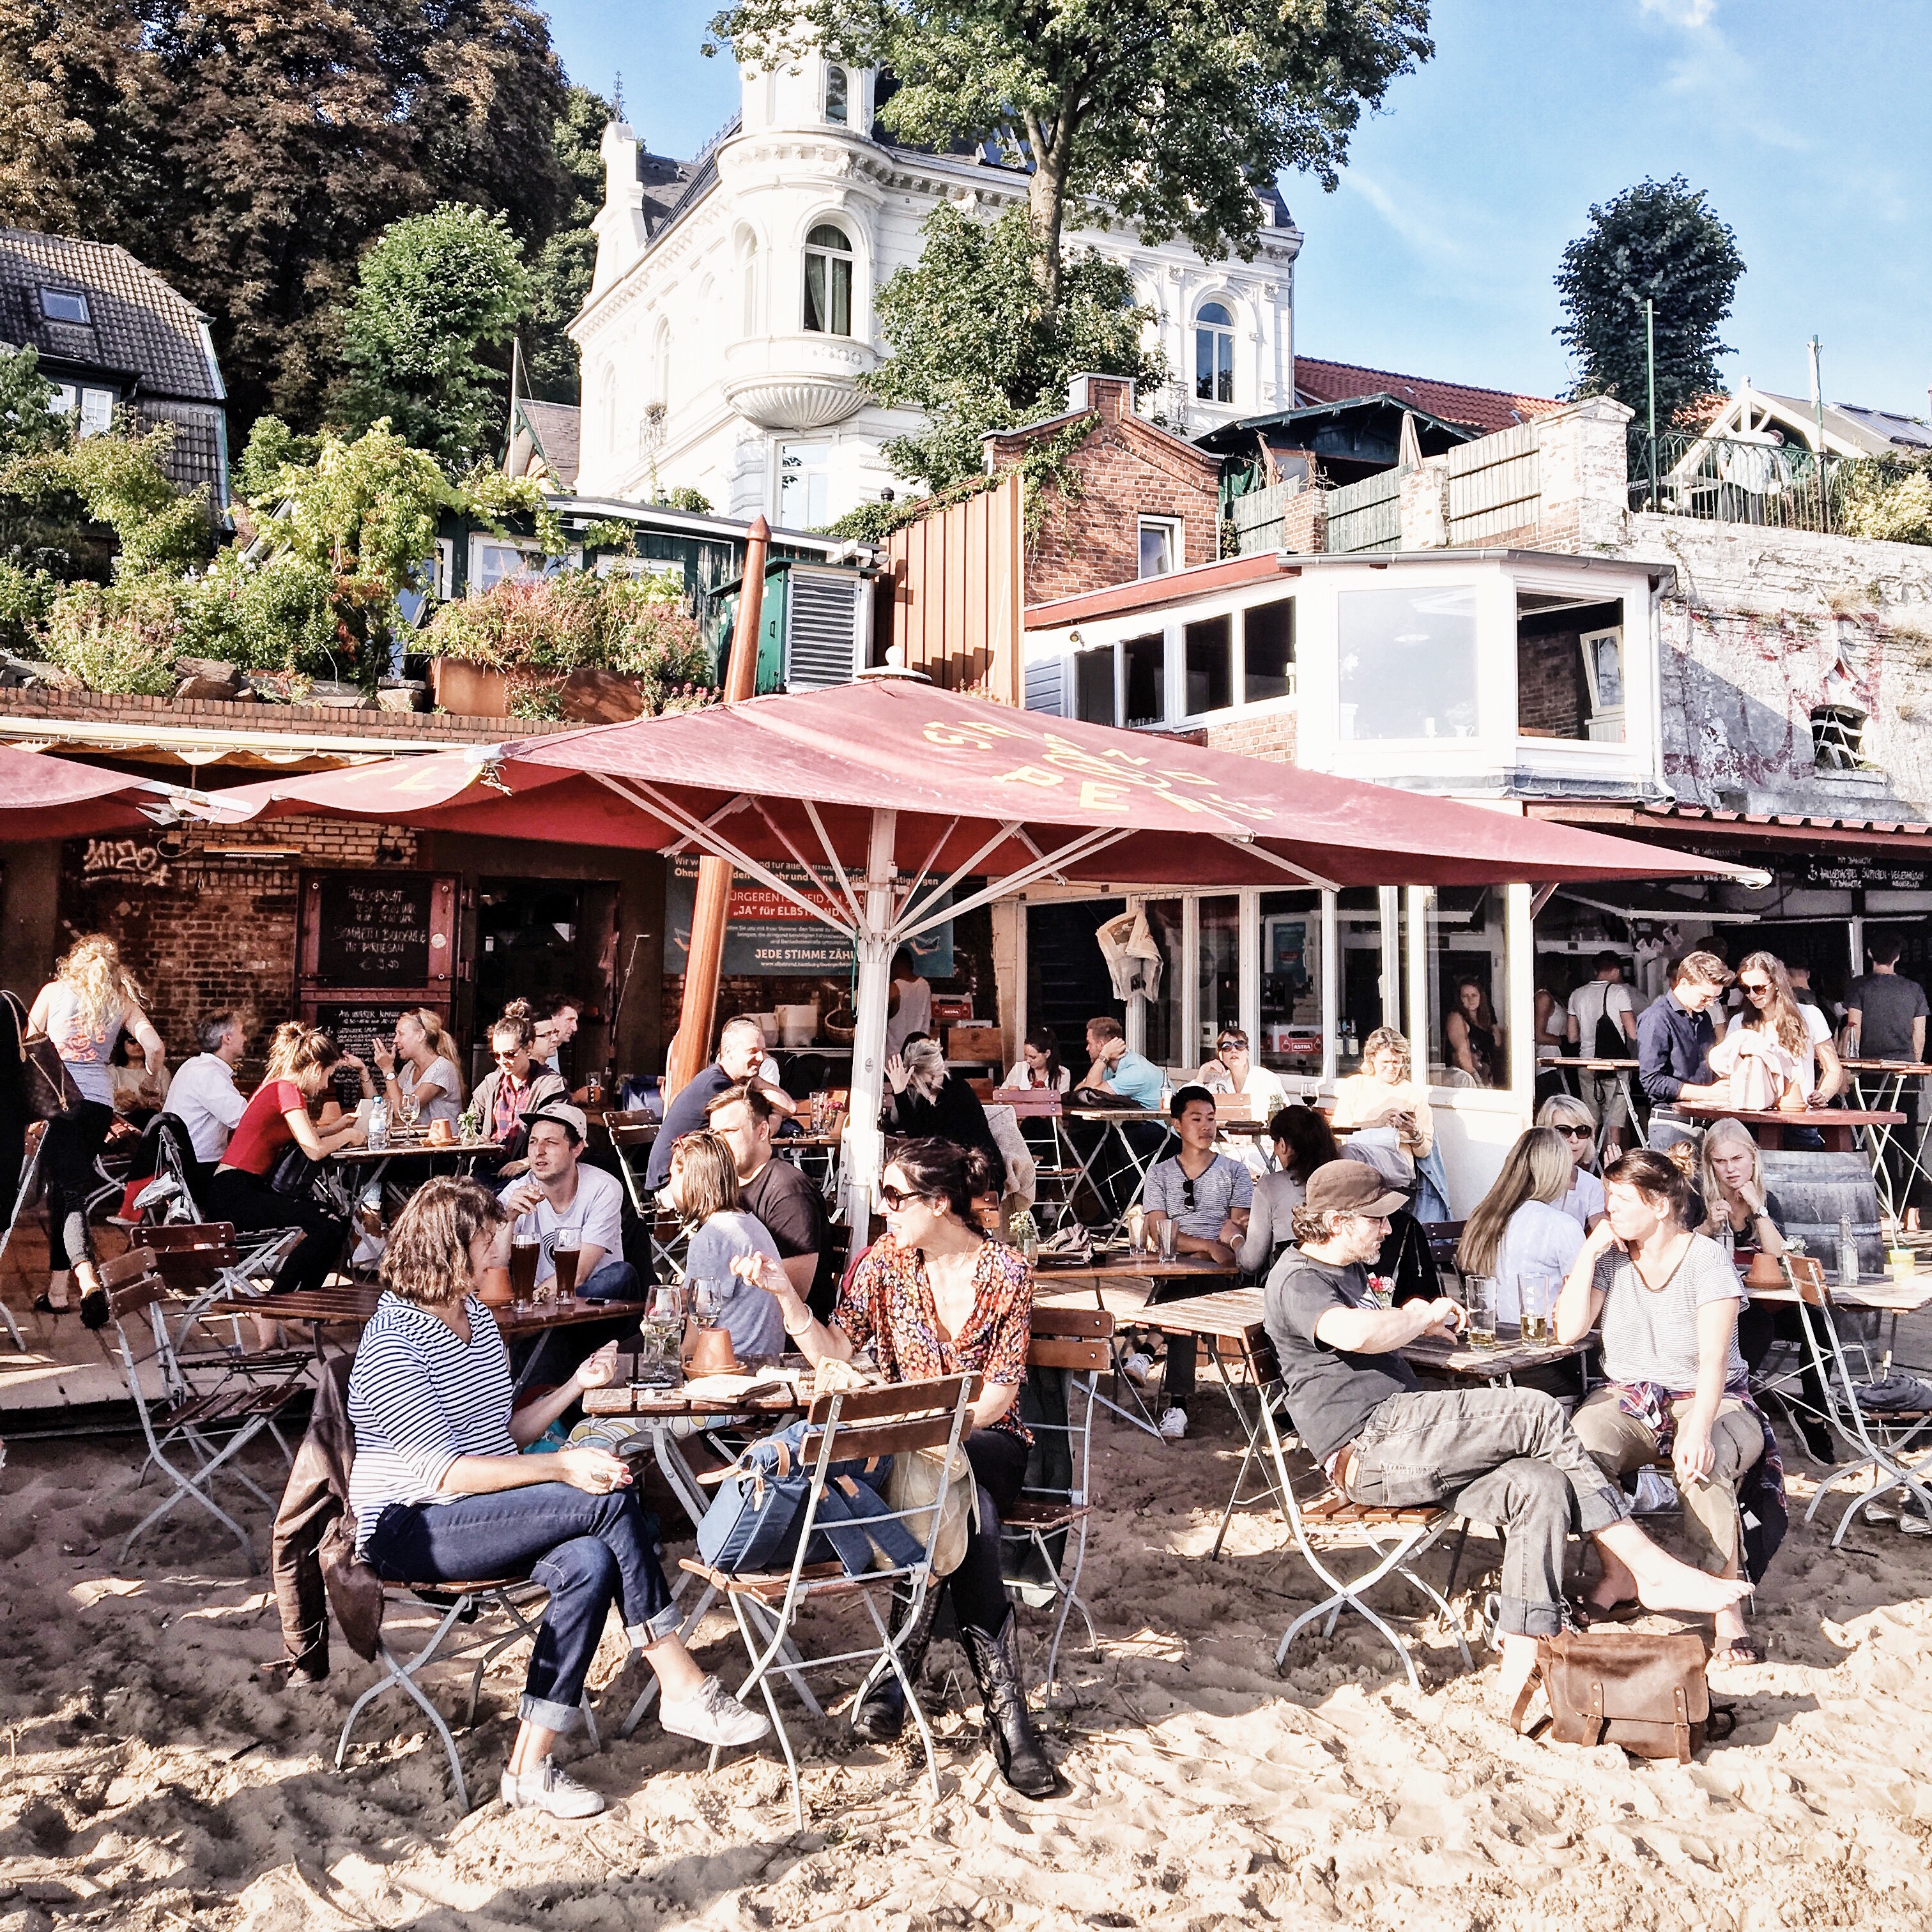 Menschen in der Strandperle, einer Bar am Elbstrand von Hamburg